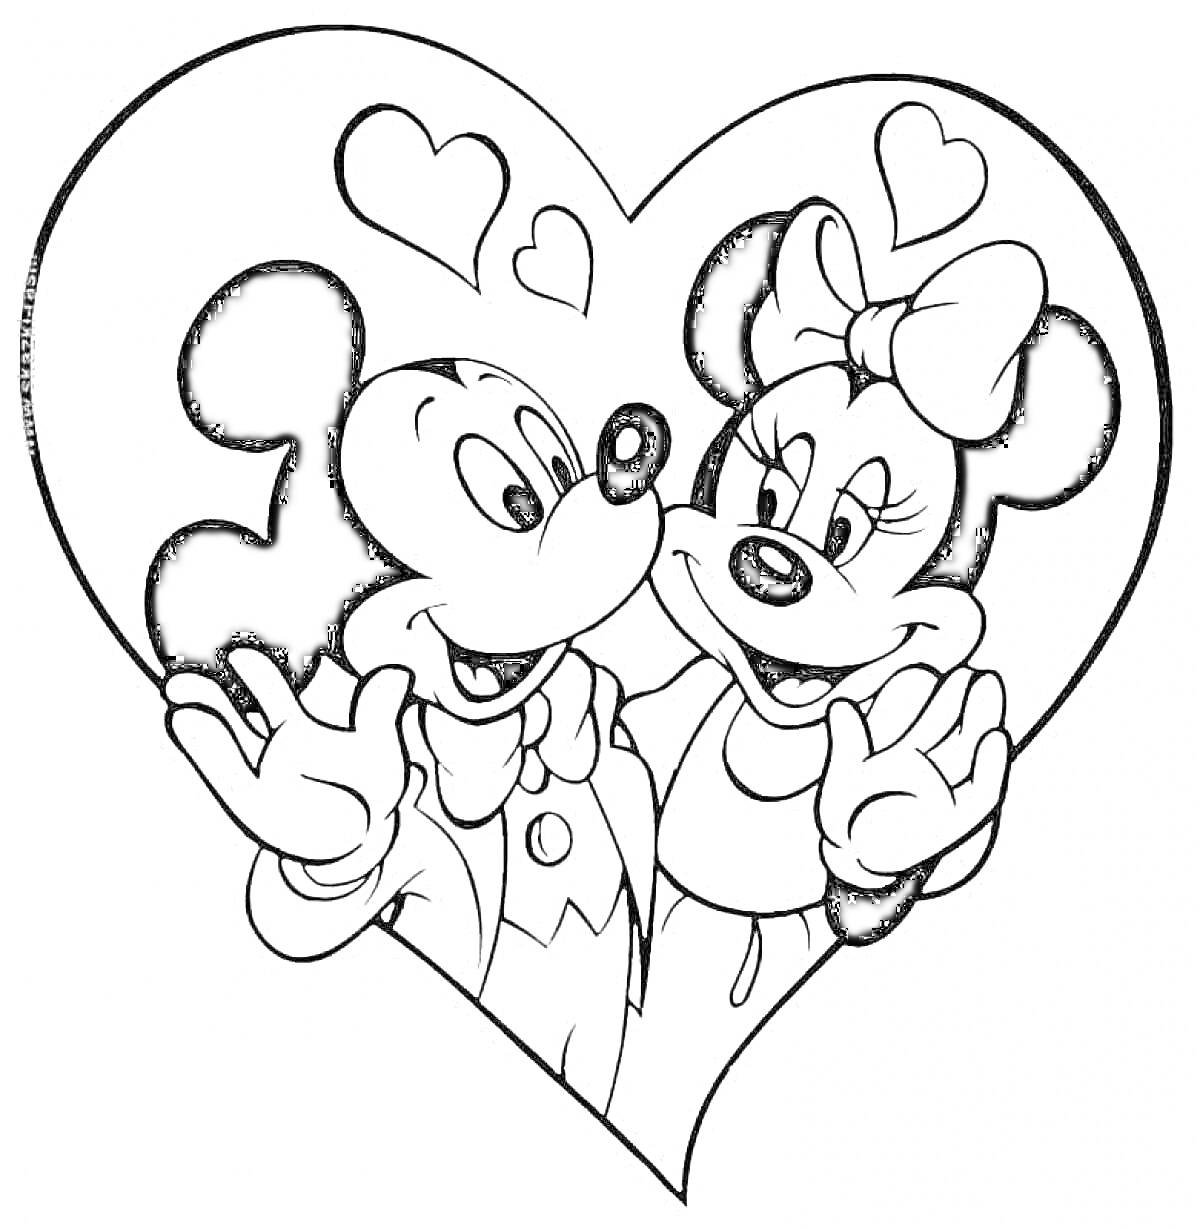 Раскраска Два мультяшных персонажа с большими ушами в форме сердца, с сердечками над головами